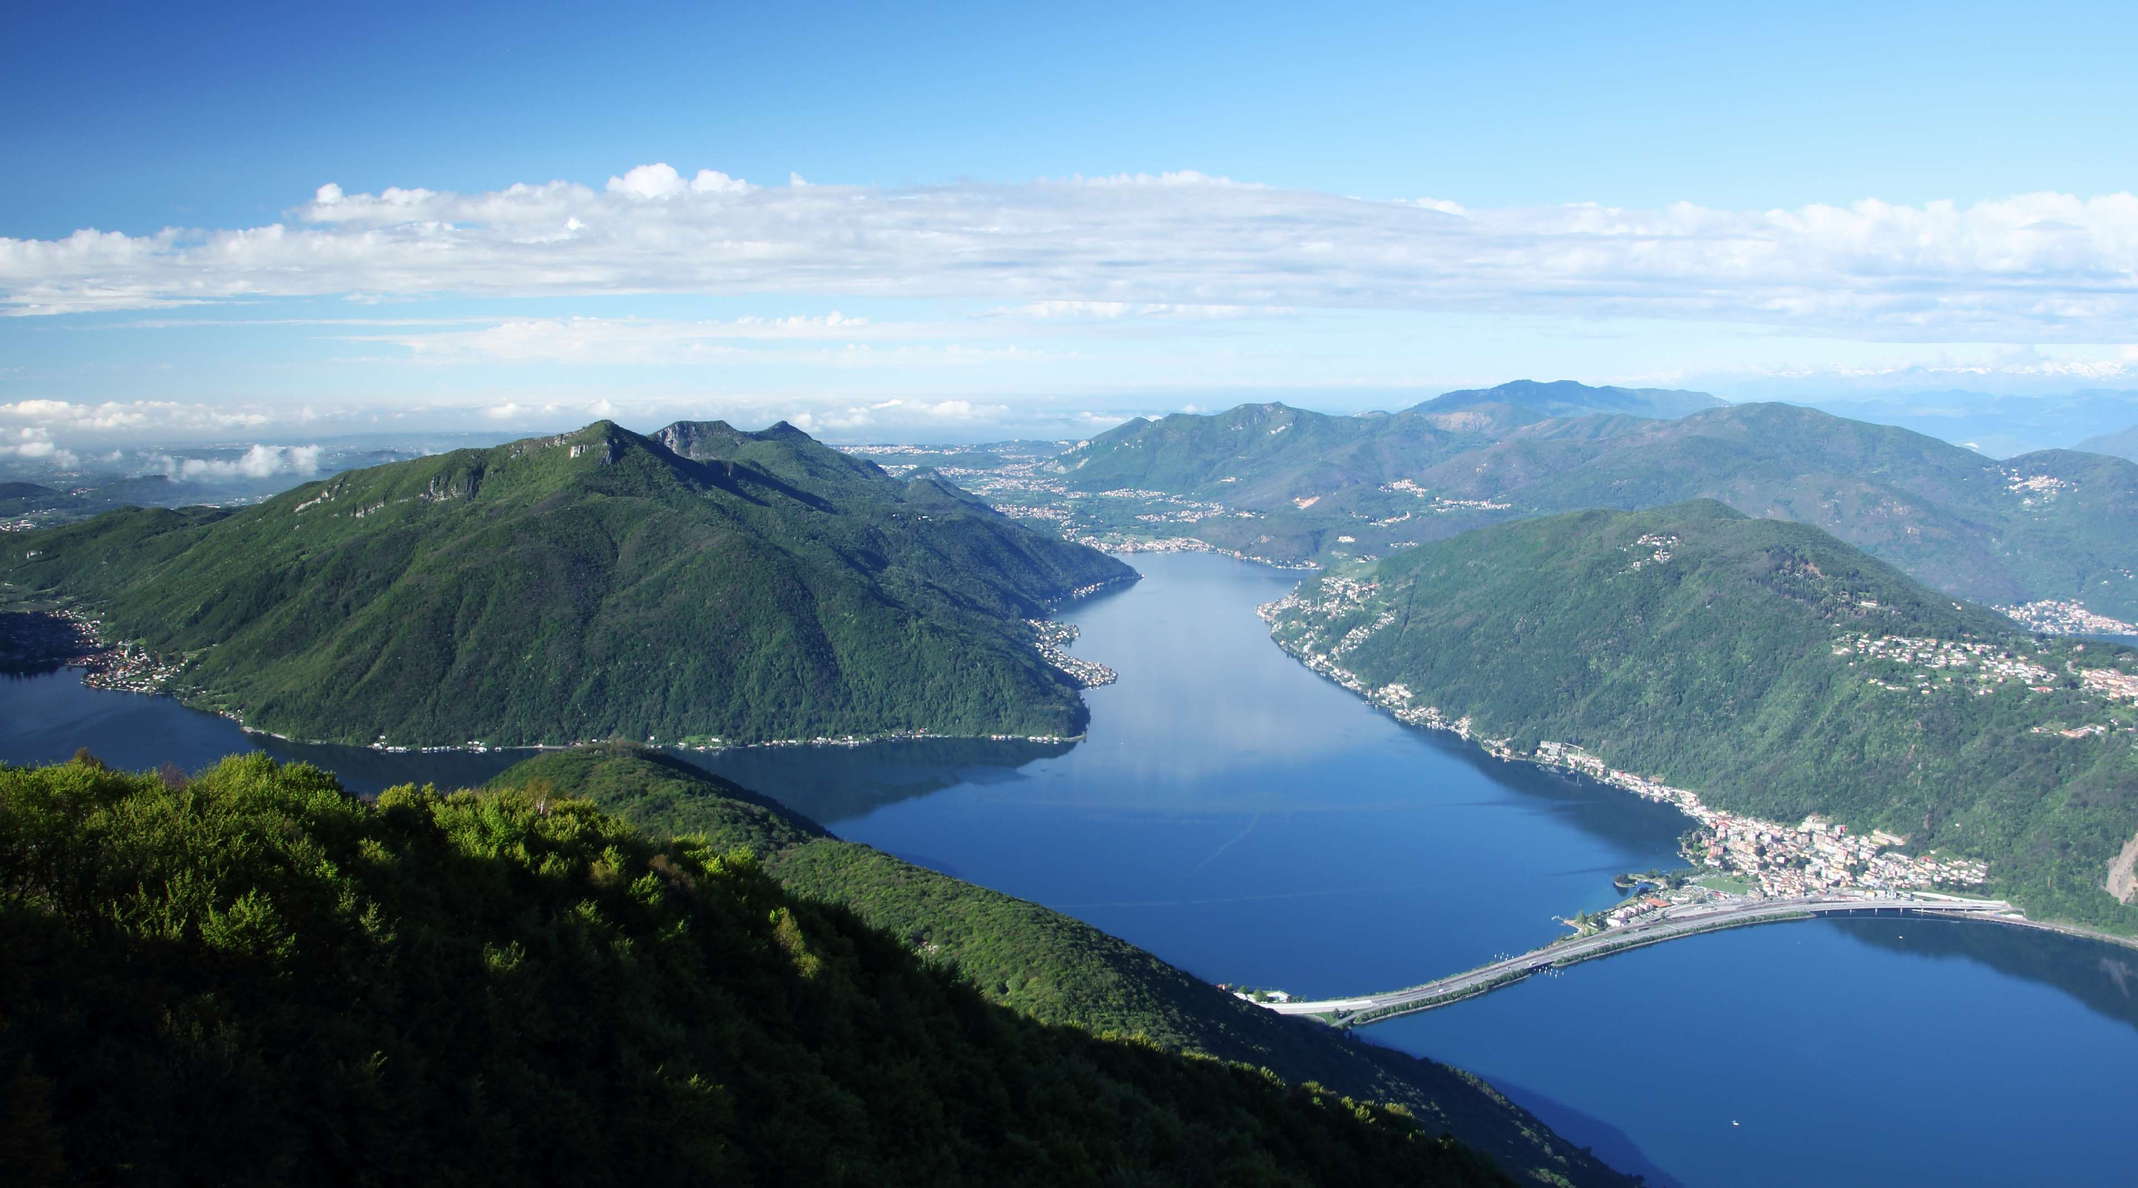 Lago di Lugano and Monte San Giorgio